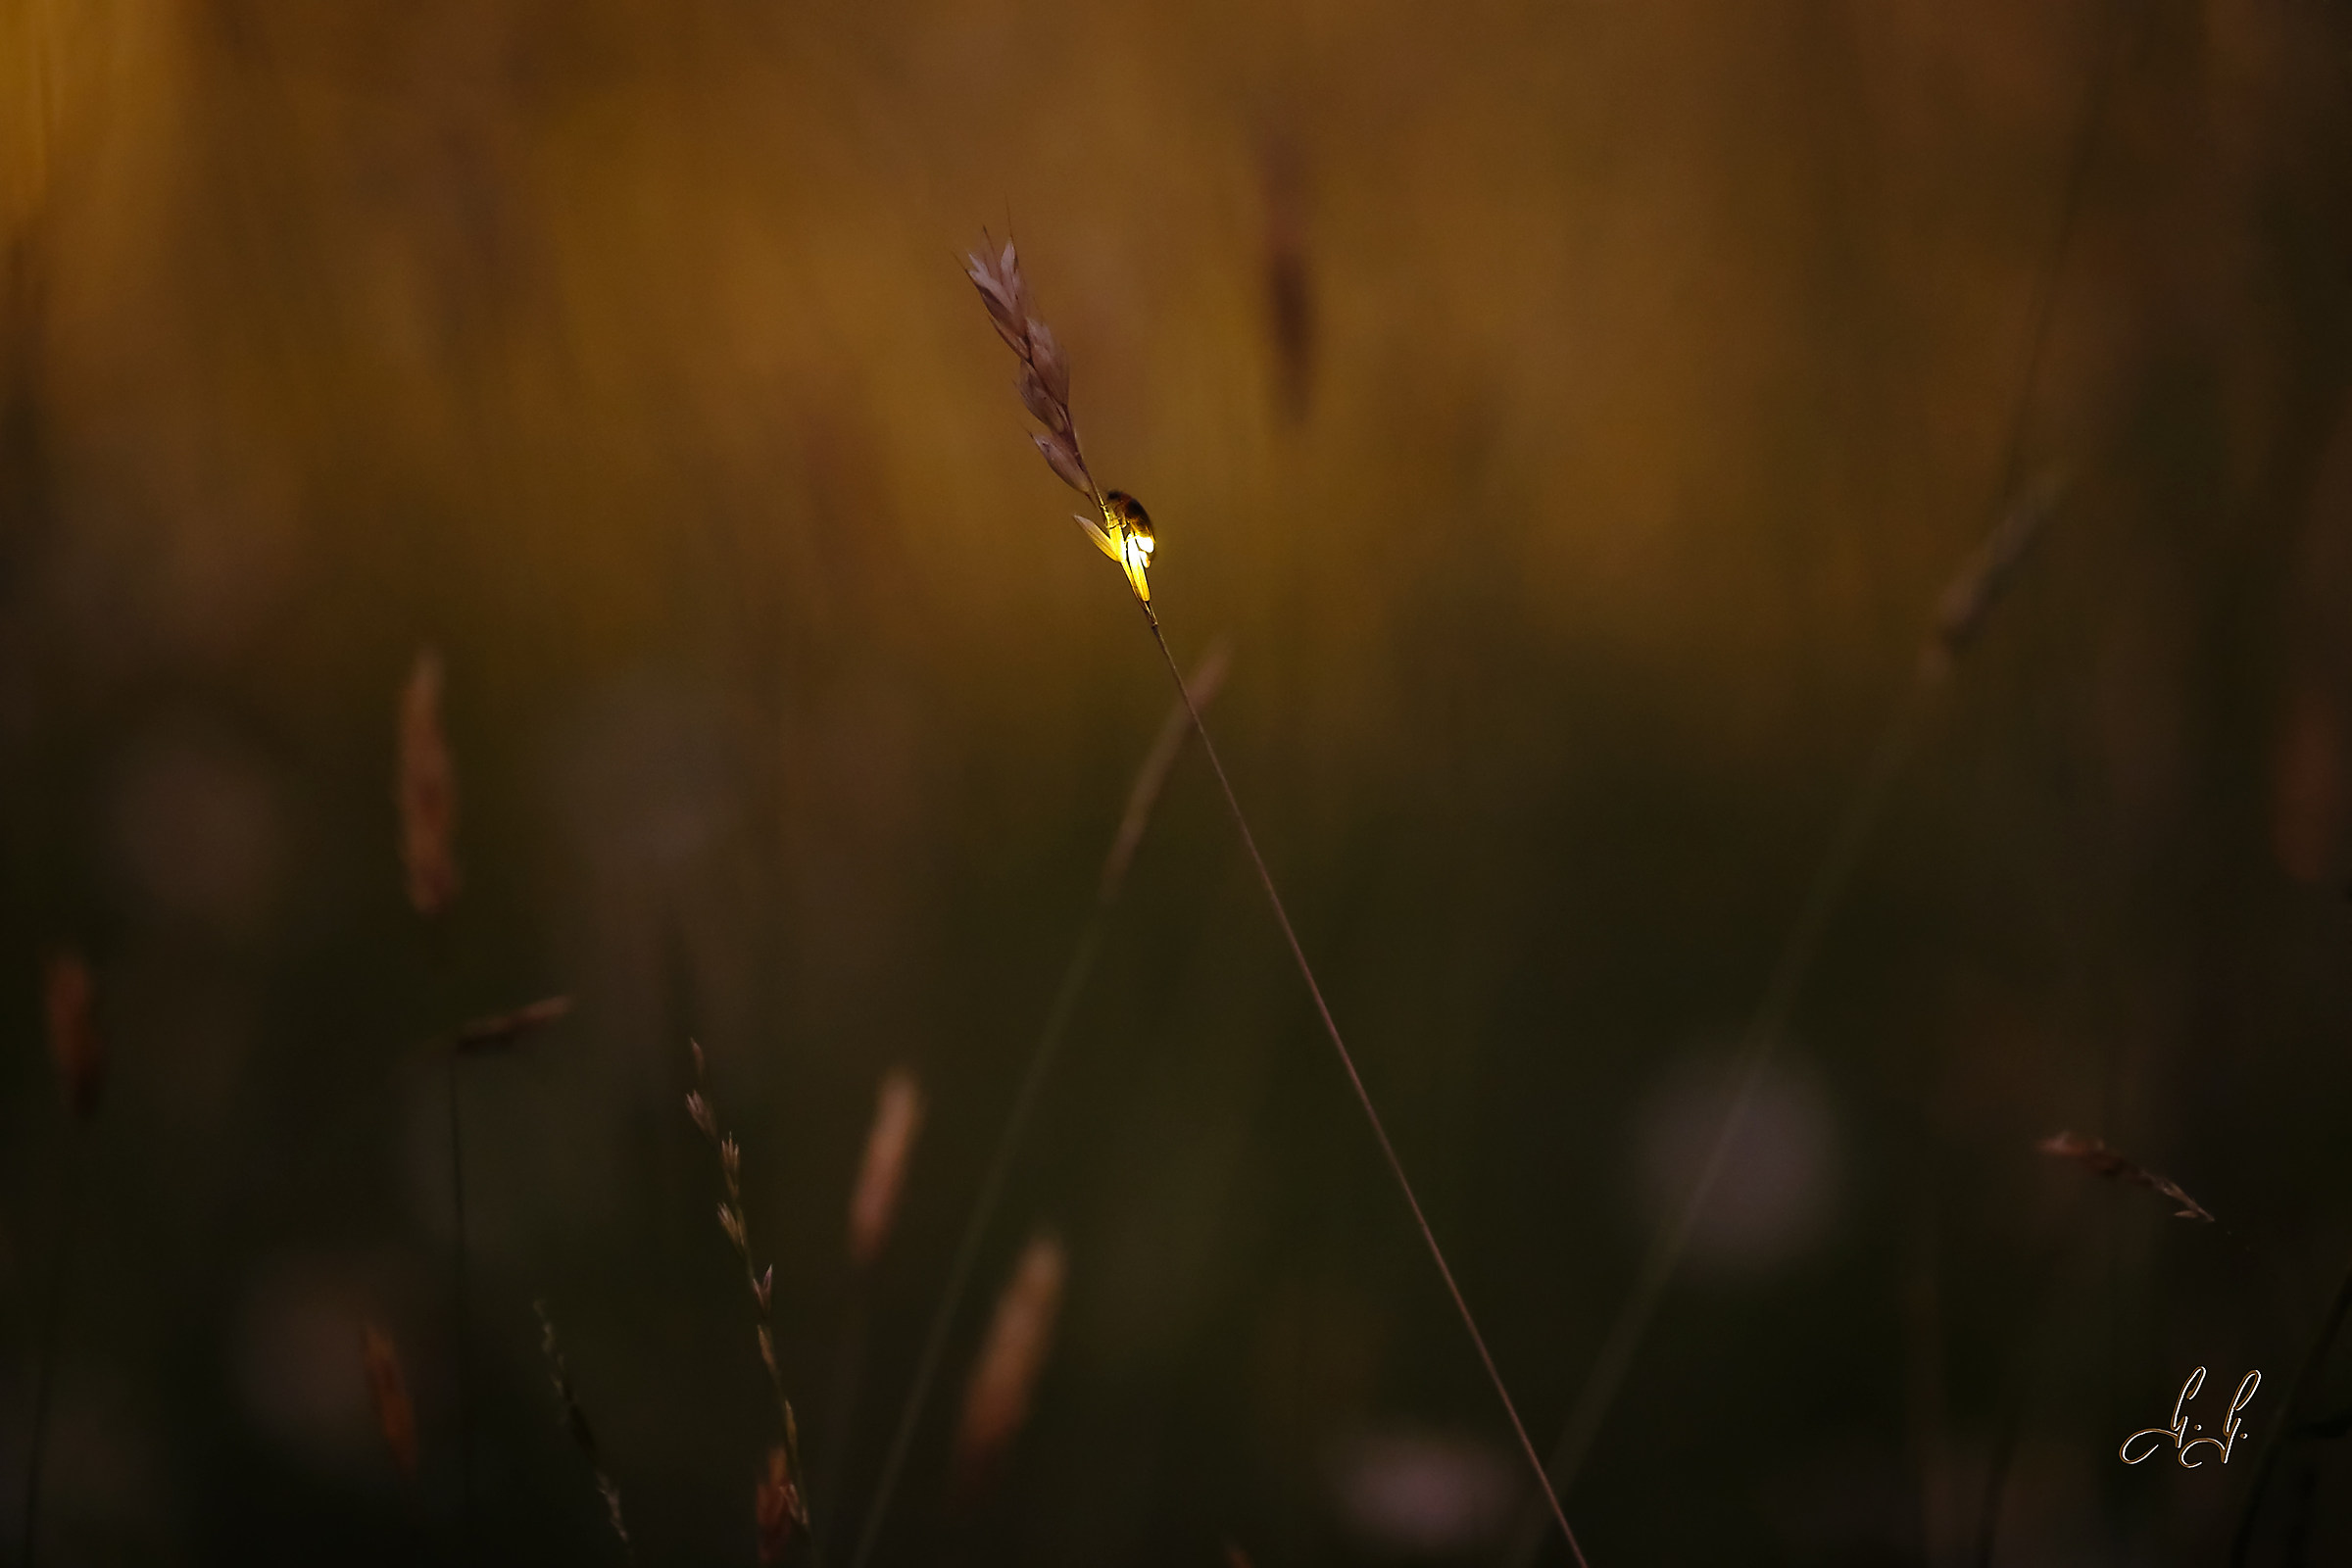 Light on a blade of grass....